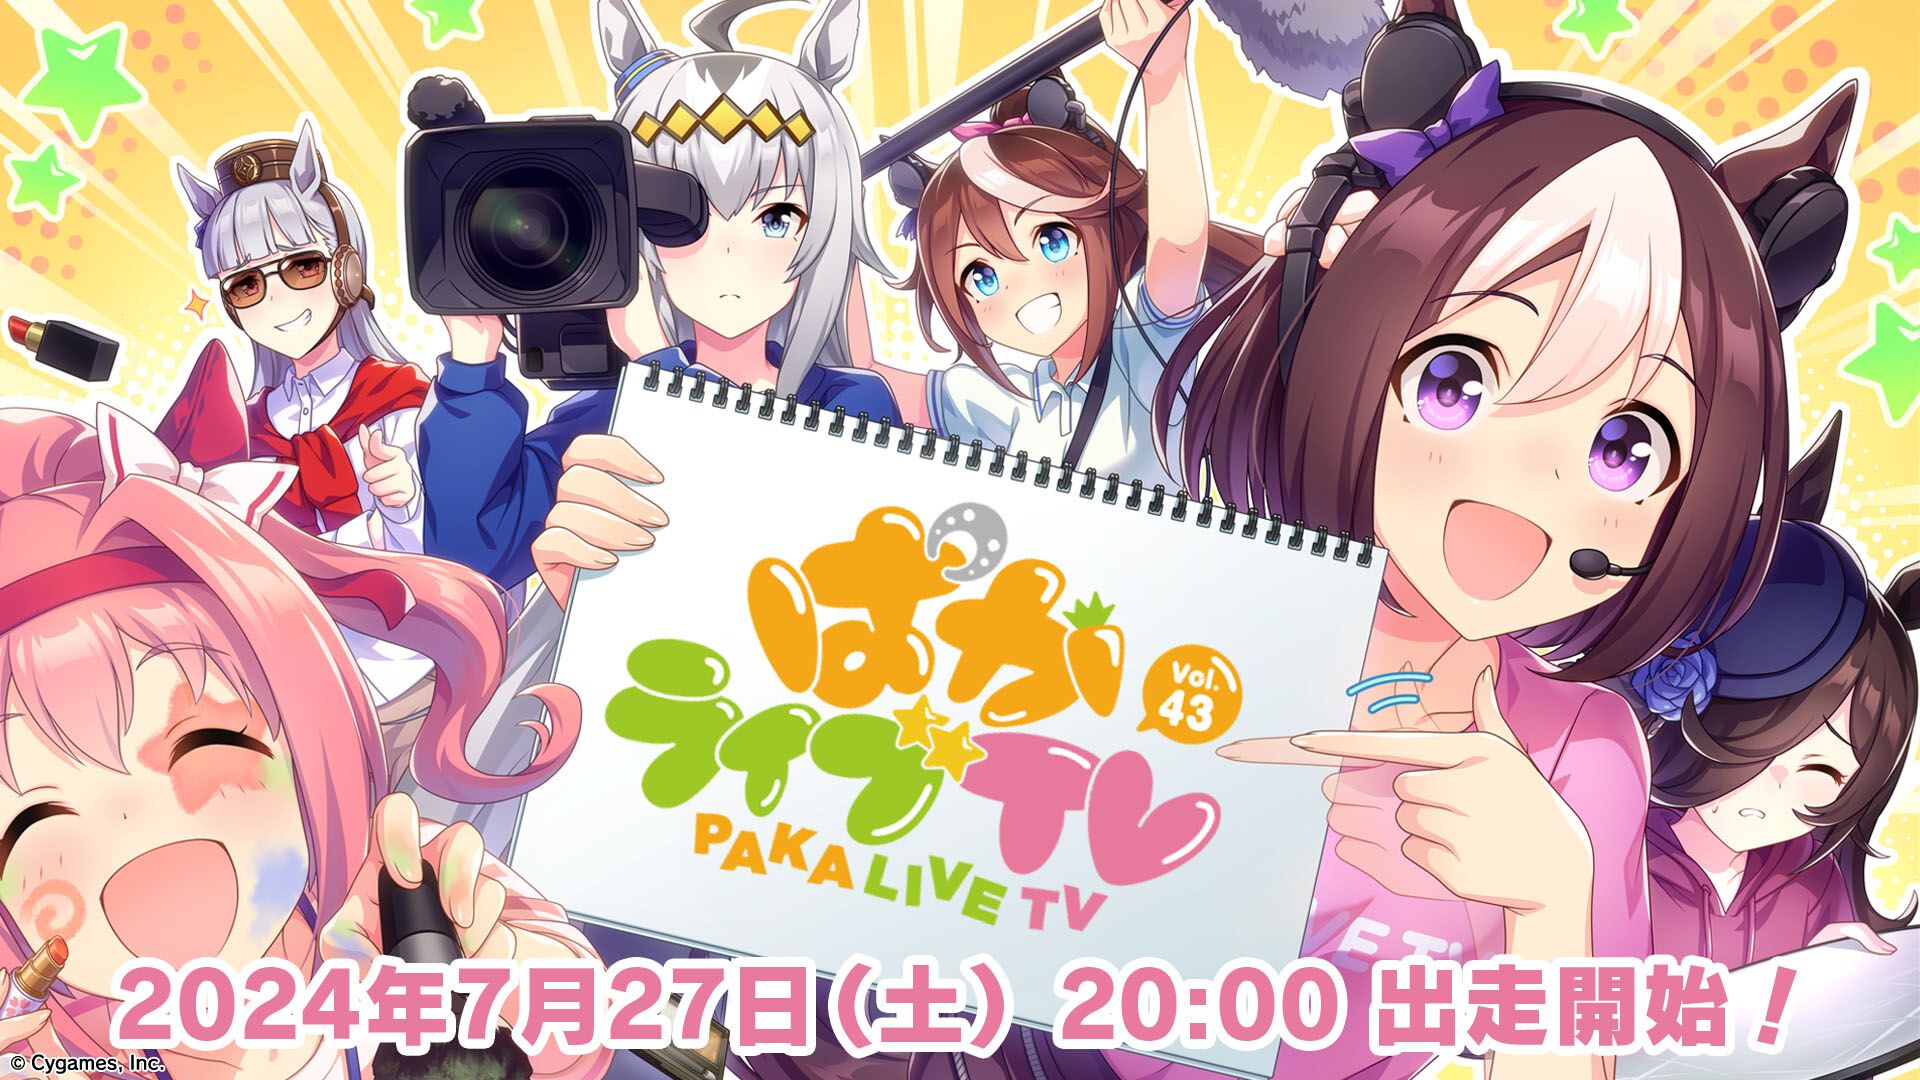 『ウマ娘』公式番組“ぱかライブ TV Vol.43”が7月27日に放送決定。次回ガチャや新たなリアルイベントの情報も公開予定